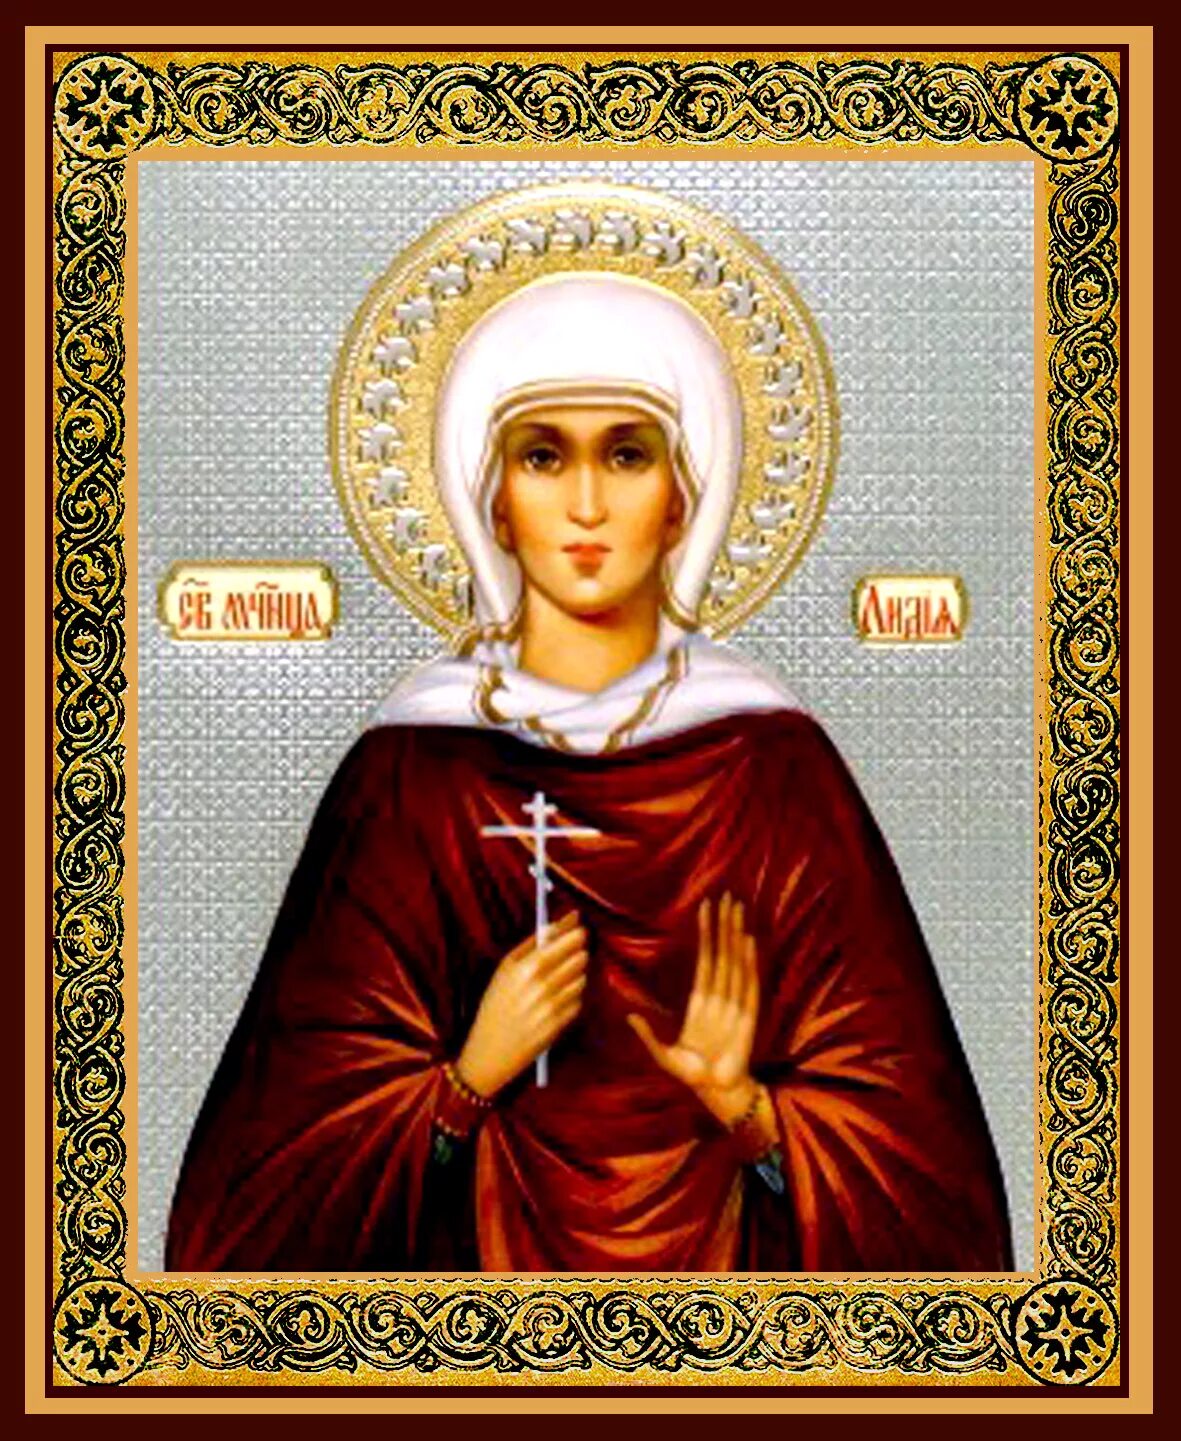 Именины лидии открытки. Икона Святой мученицы Лидии. Икона Святой мучен цы Лидии.